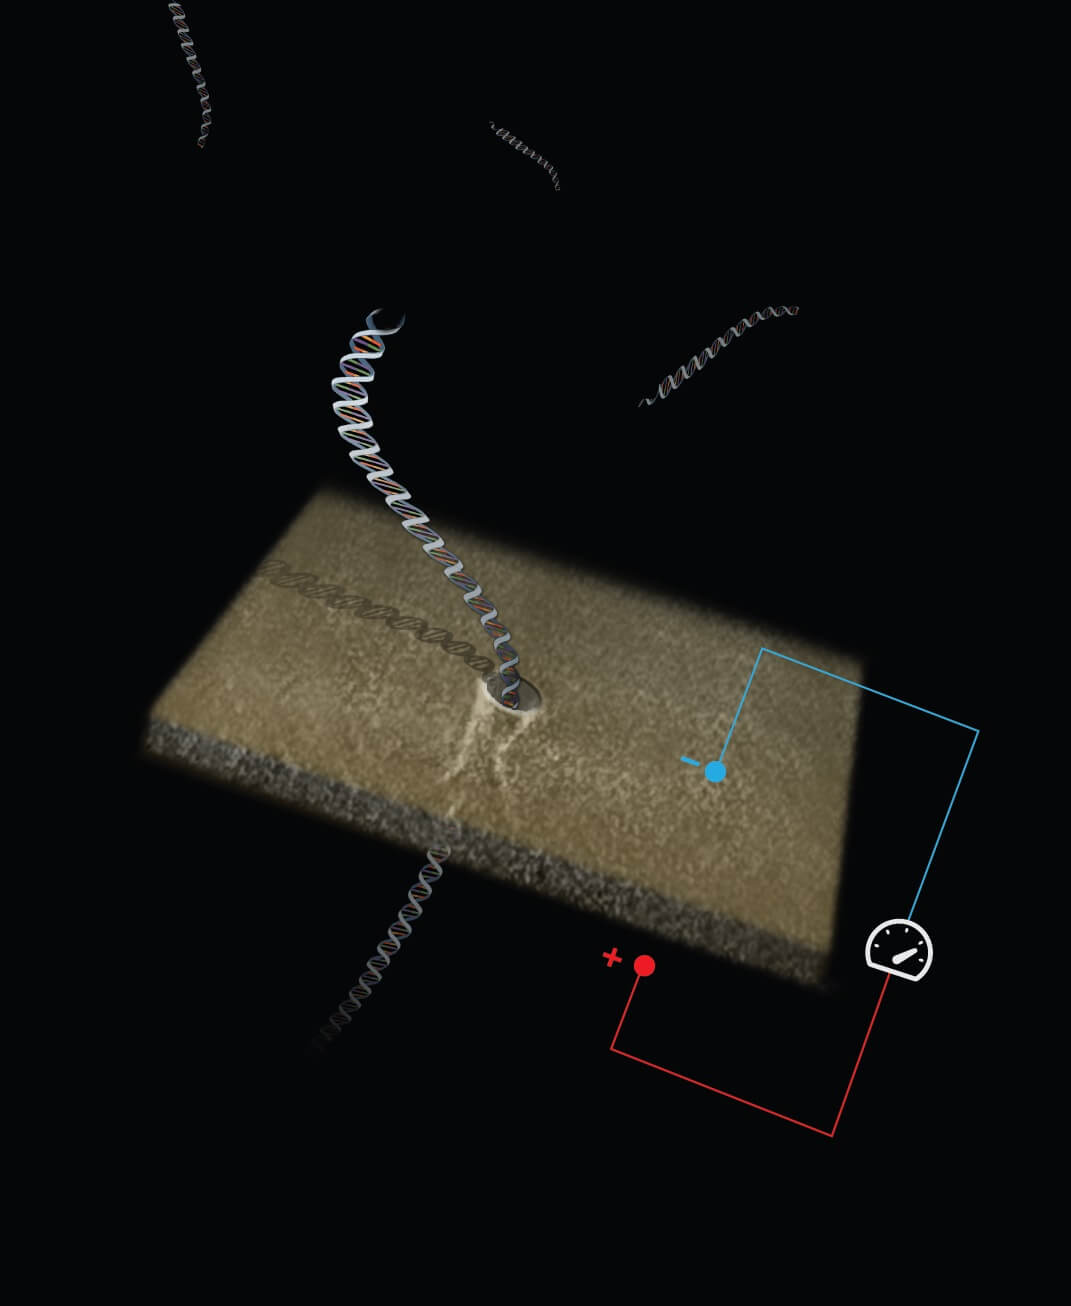 אילוסטרציה של DNA המועבר דרך חריר ננו-מטרי. באדיבות פרופ' עמית מלר, הטכניון